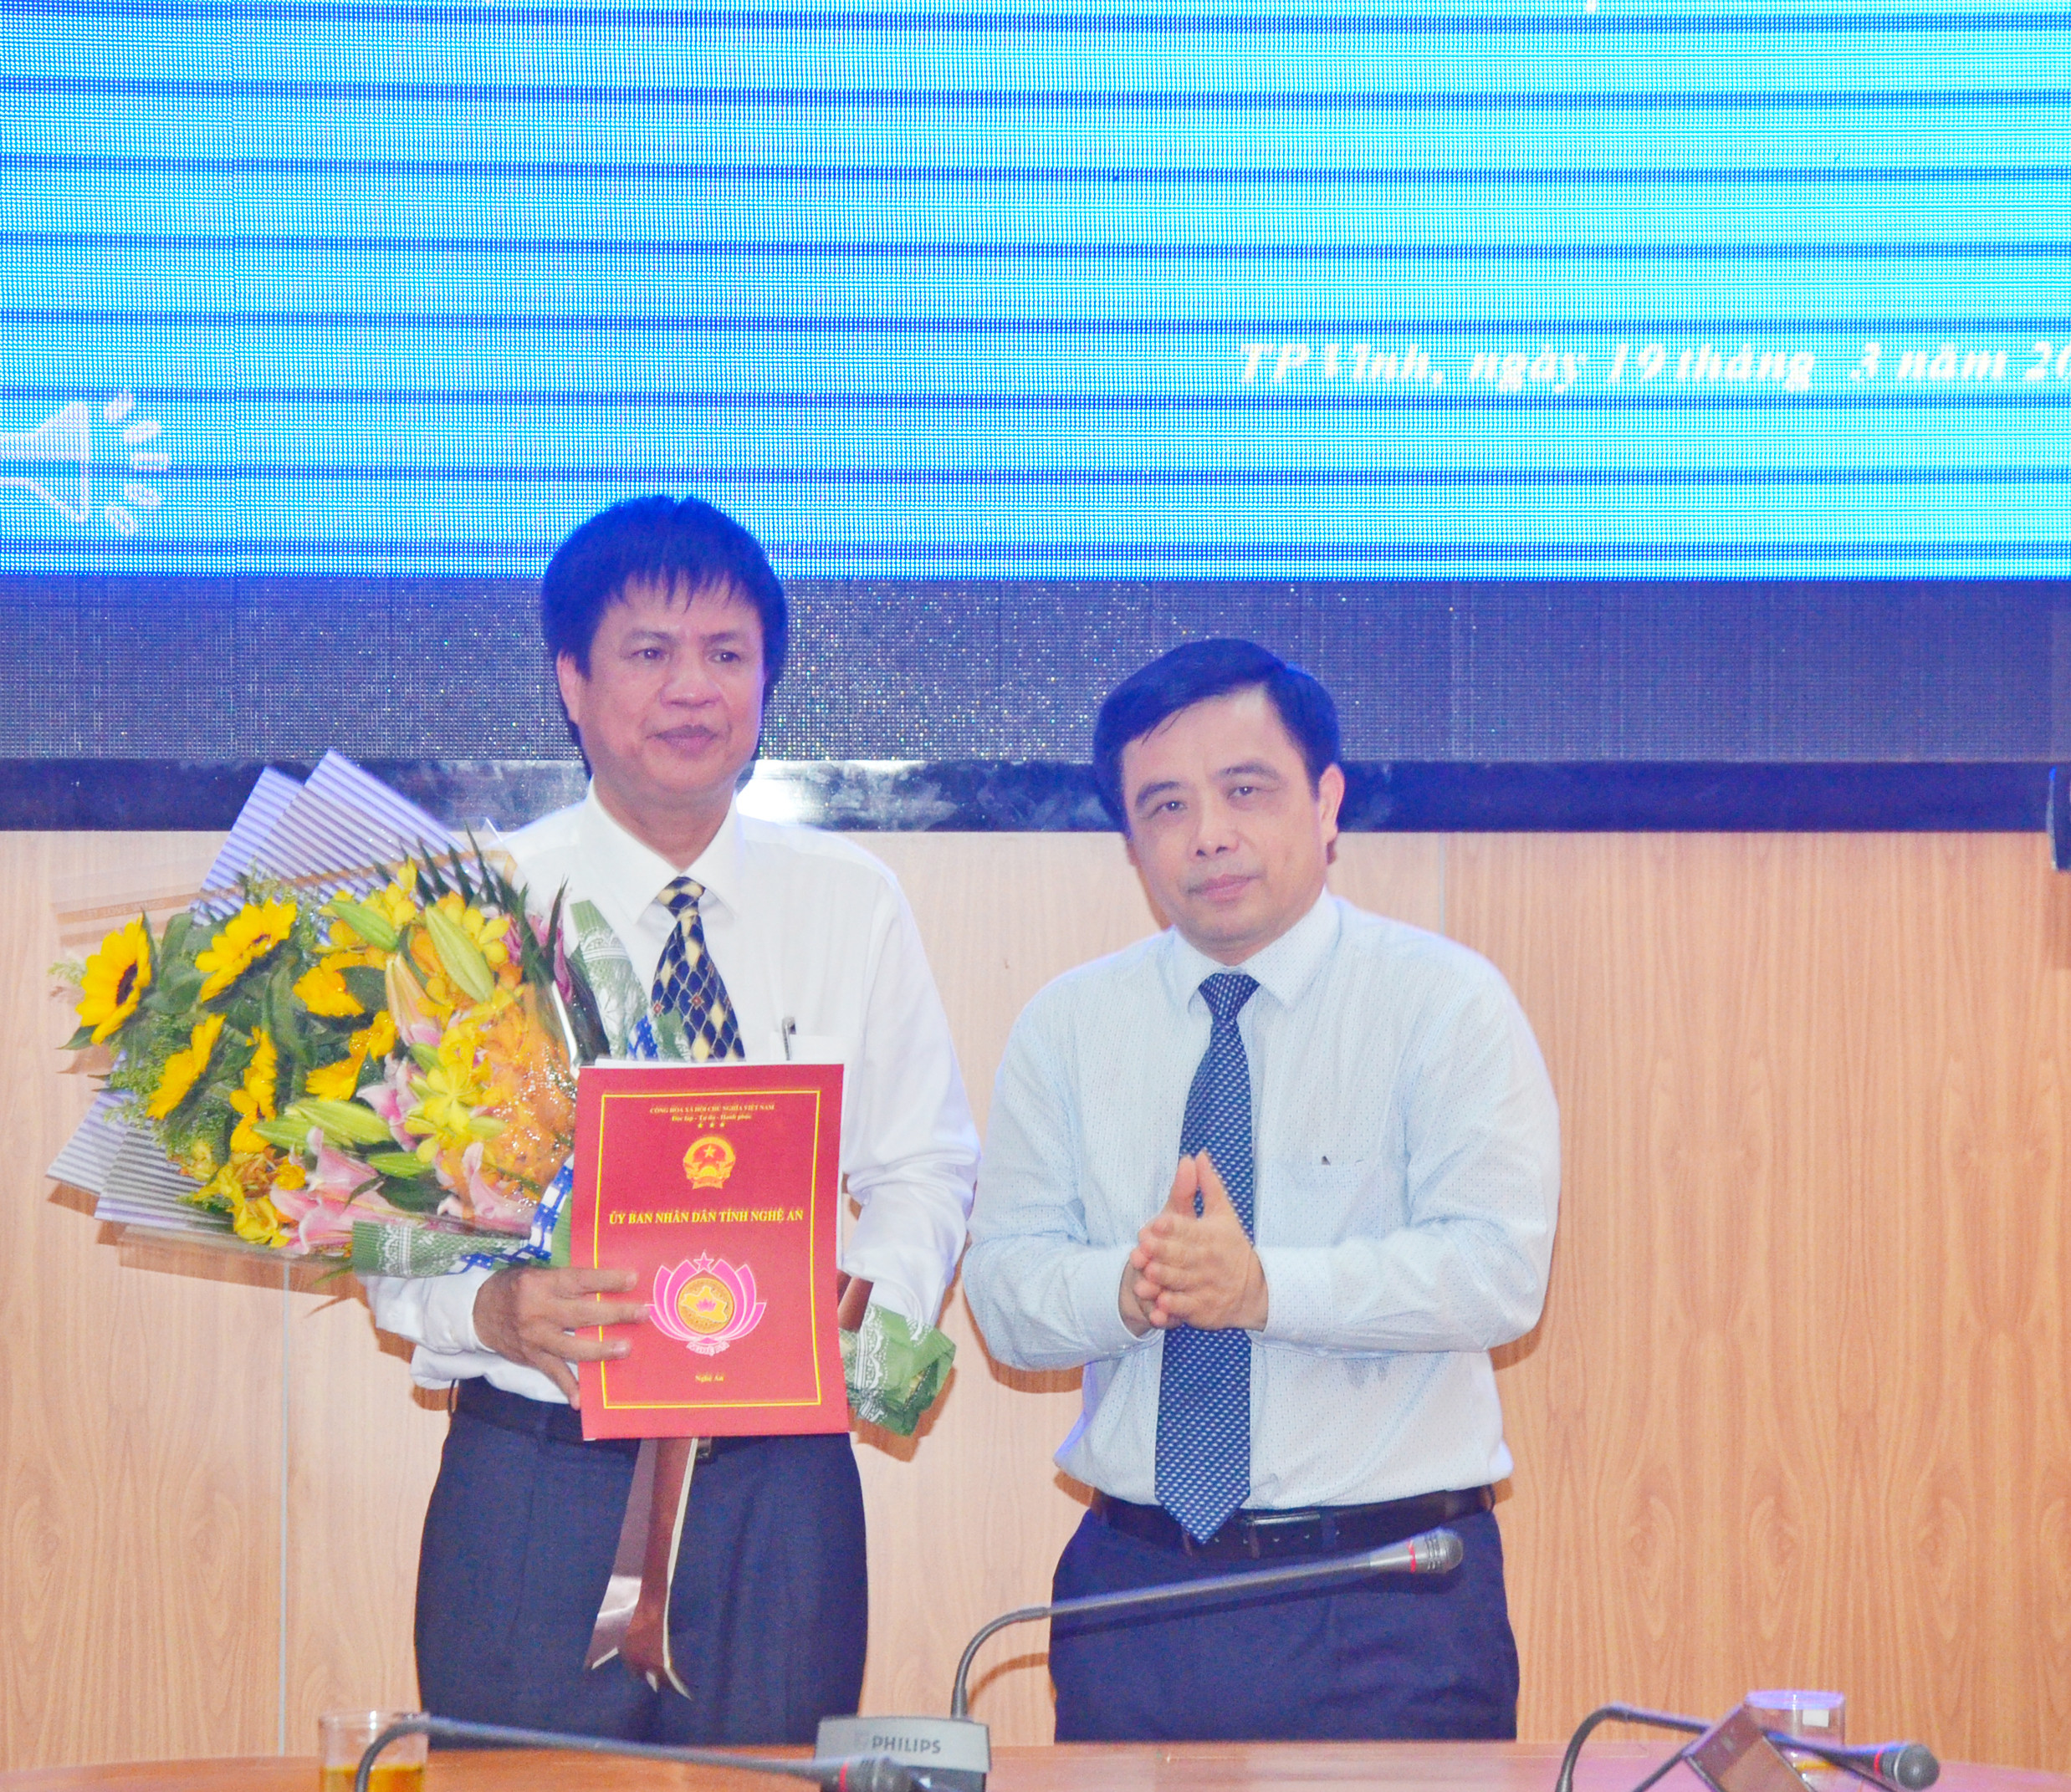 Phó Chủ tịch UBND tỉnh trao Quyết định bổ nhiệm Phó Giám đốc Sở Khoa học và Công nghệ cho đồng chí Hoàng Nghĩa Nhạc. Ảnh Thanh Lê